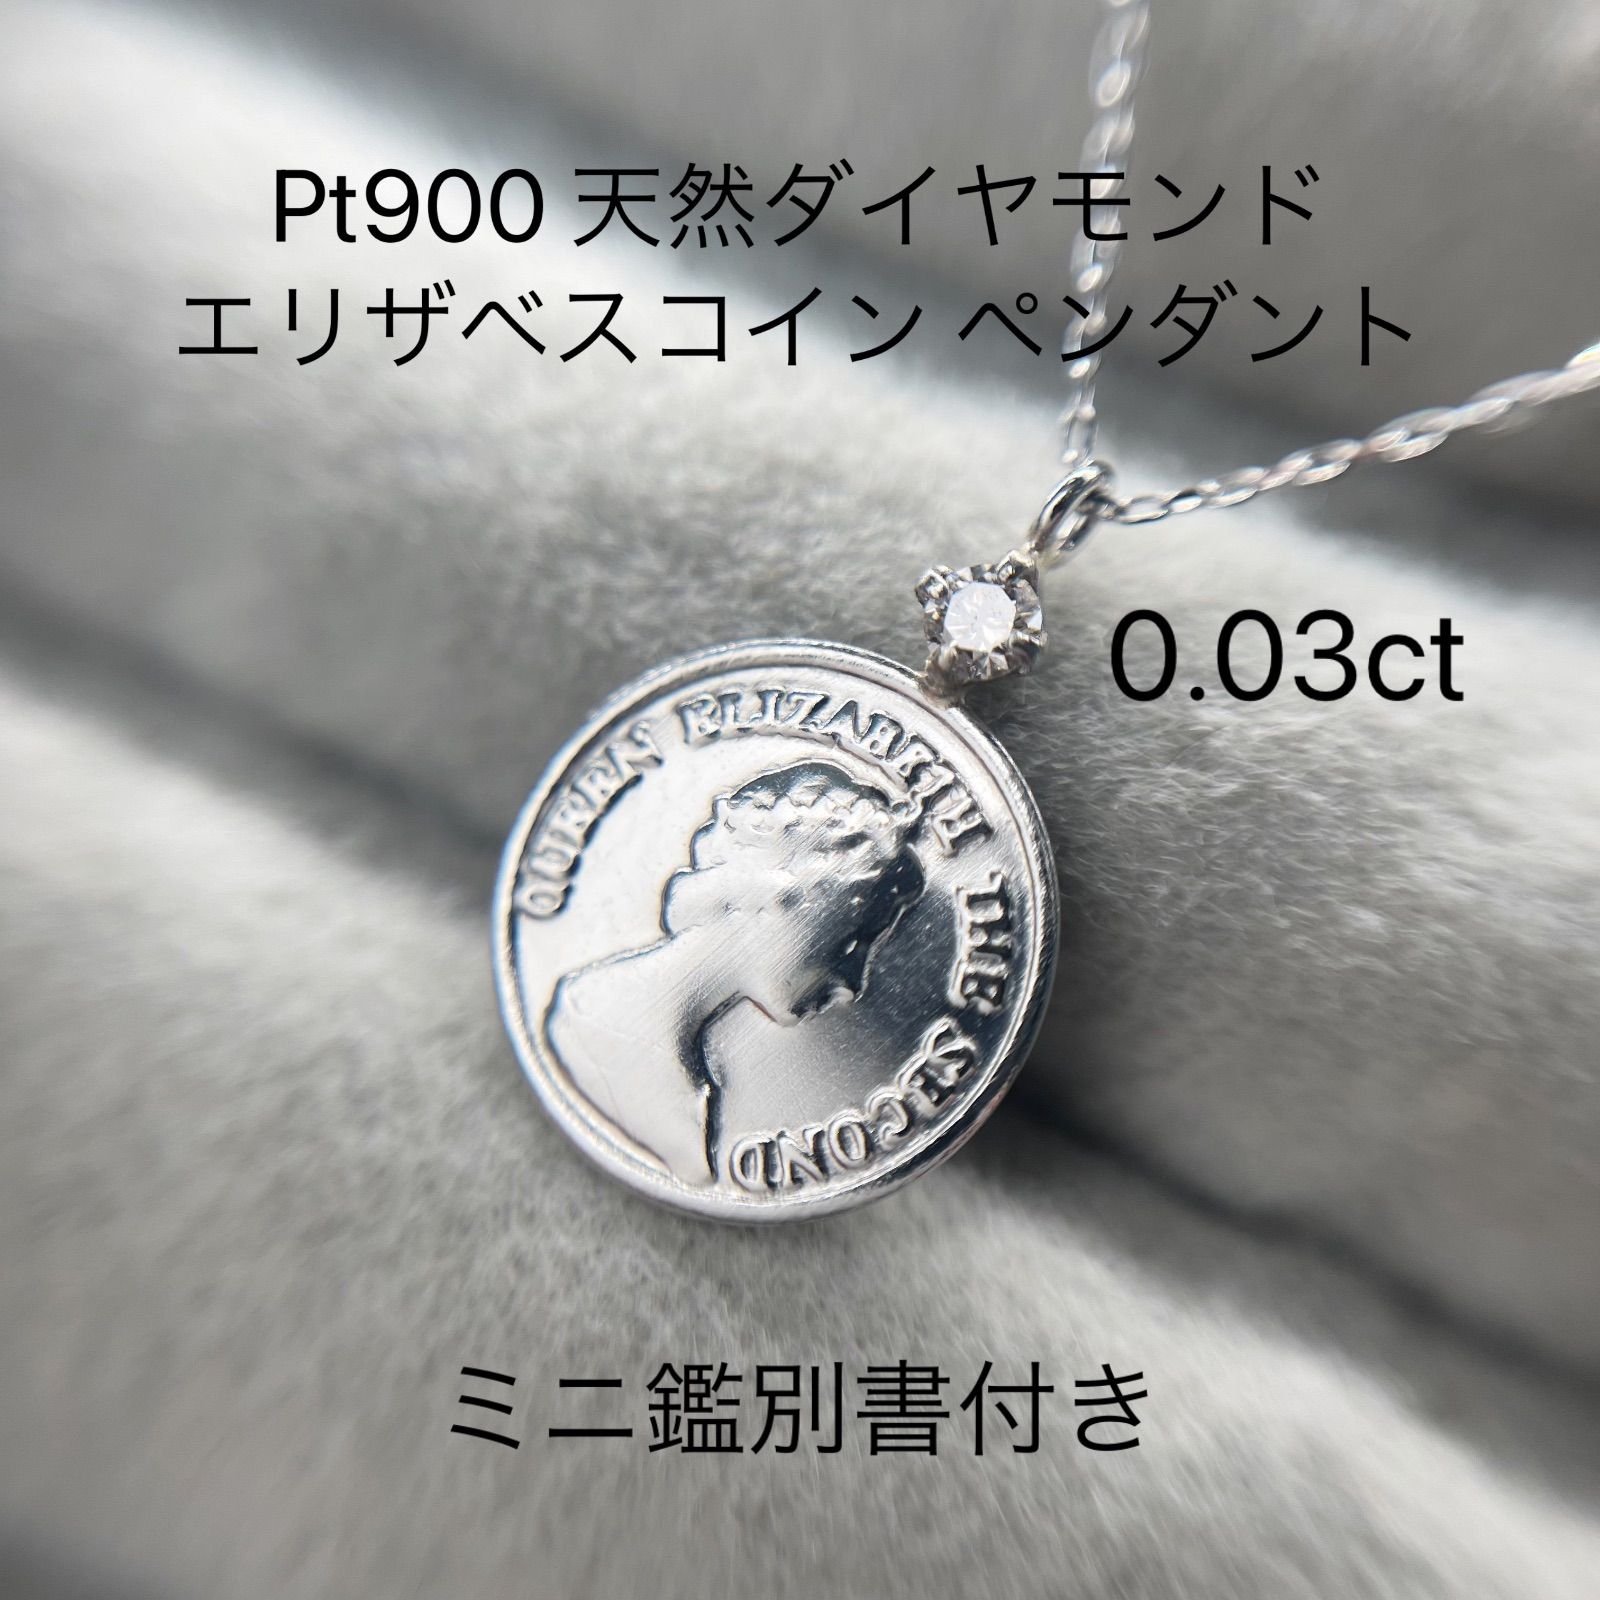 12,600円Pt900 天然ダイヤモンド 0.03ct コイン ペンダント  ネックレス